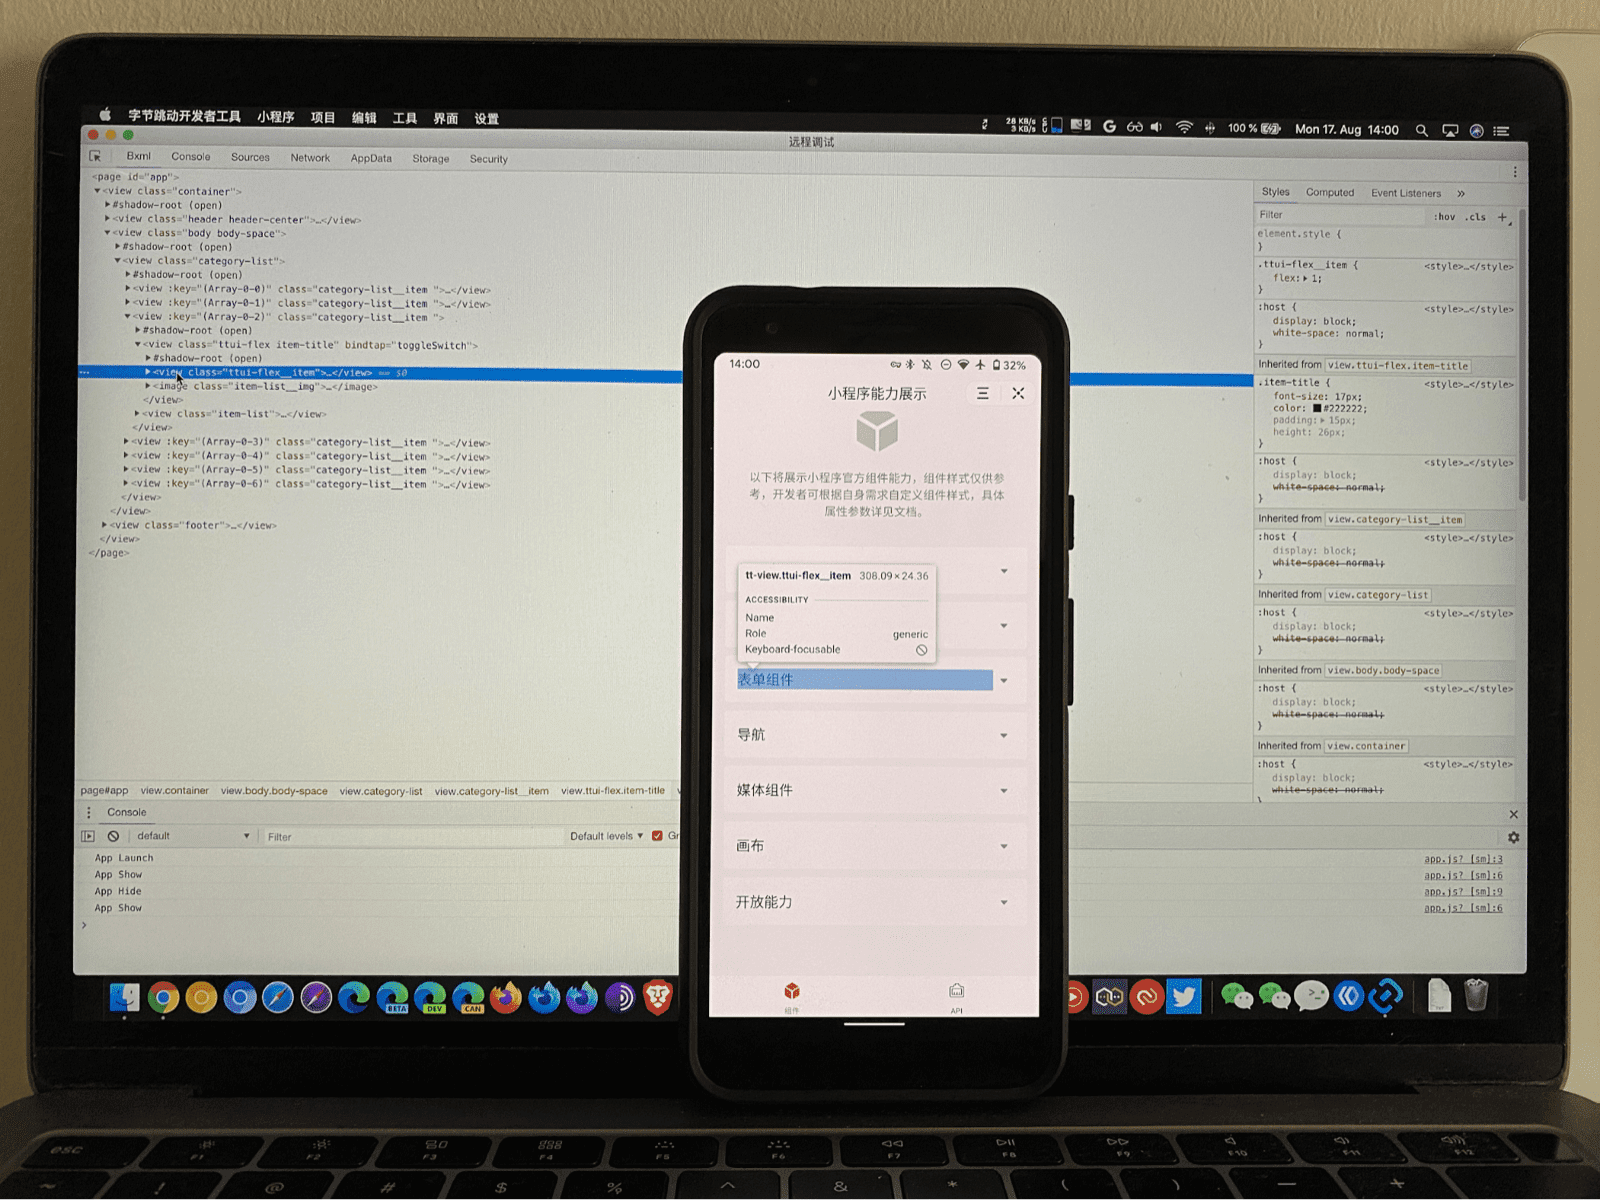 一部手機正在執行迷你應用程式，畫面上醒目顯示了 ByteDance 開發人員工具偵錯工具的部分內容，正在筆電上執行檢查。